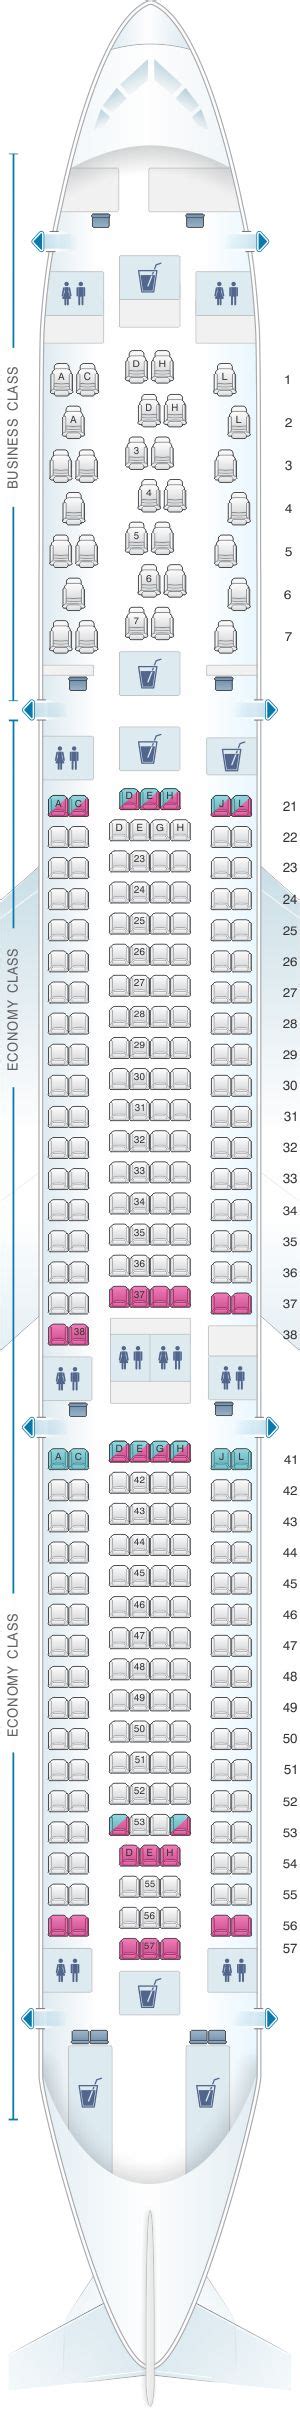 Airbus A330 Seat Map Finnair